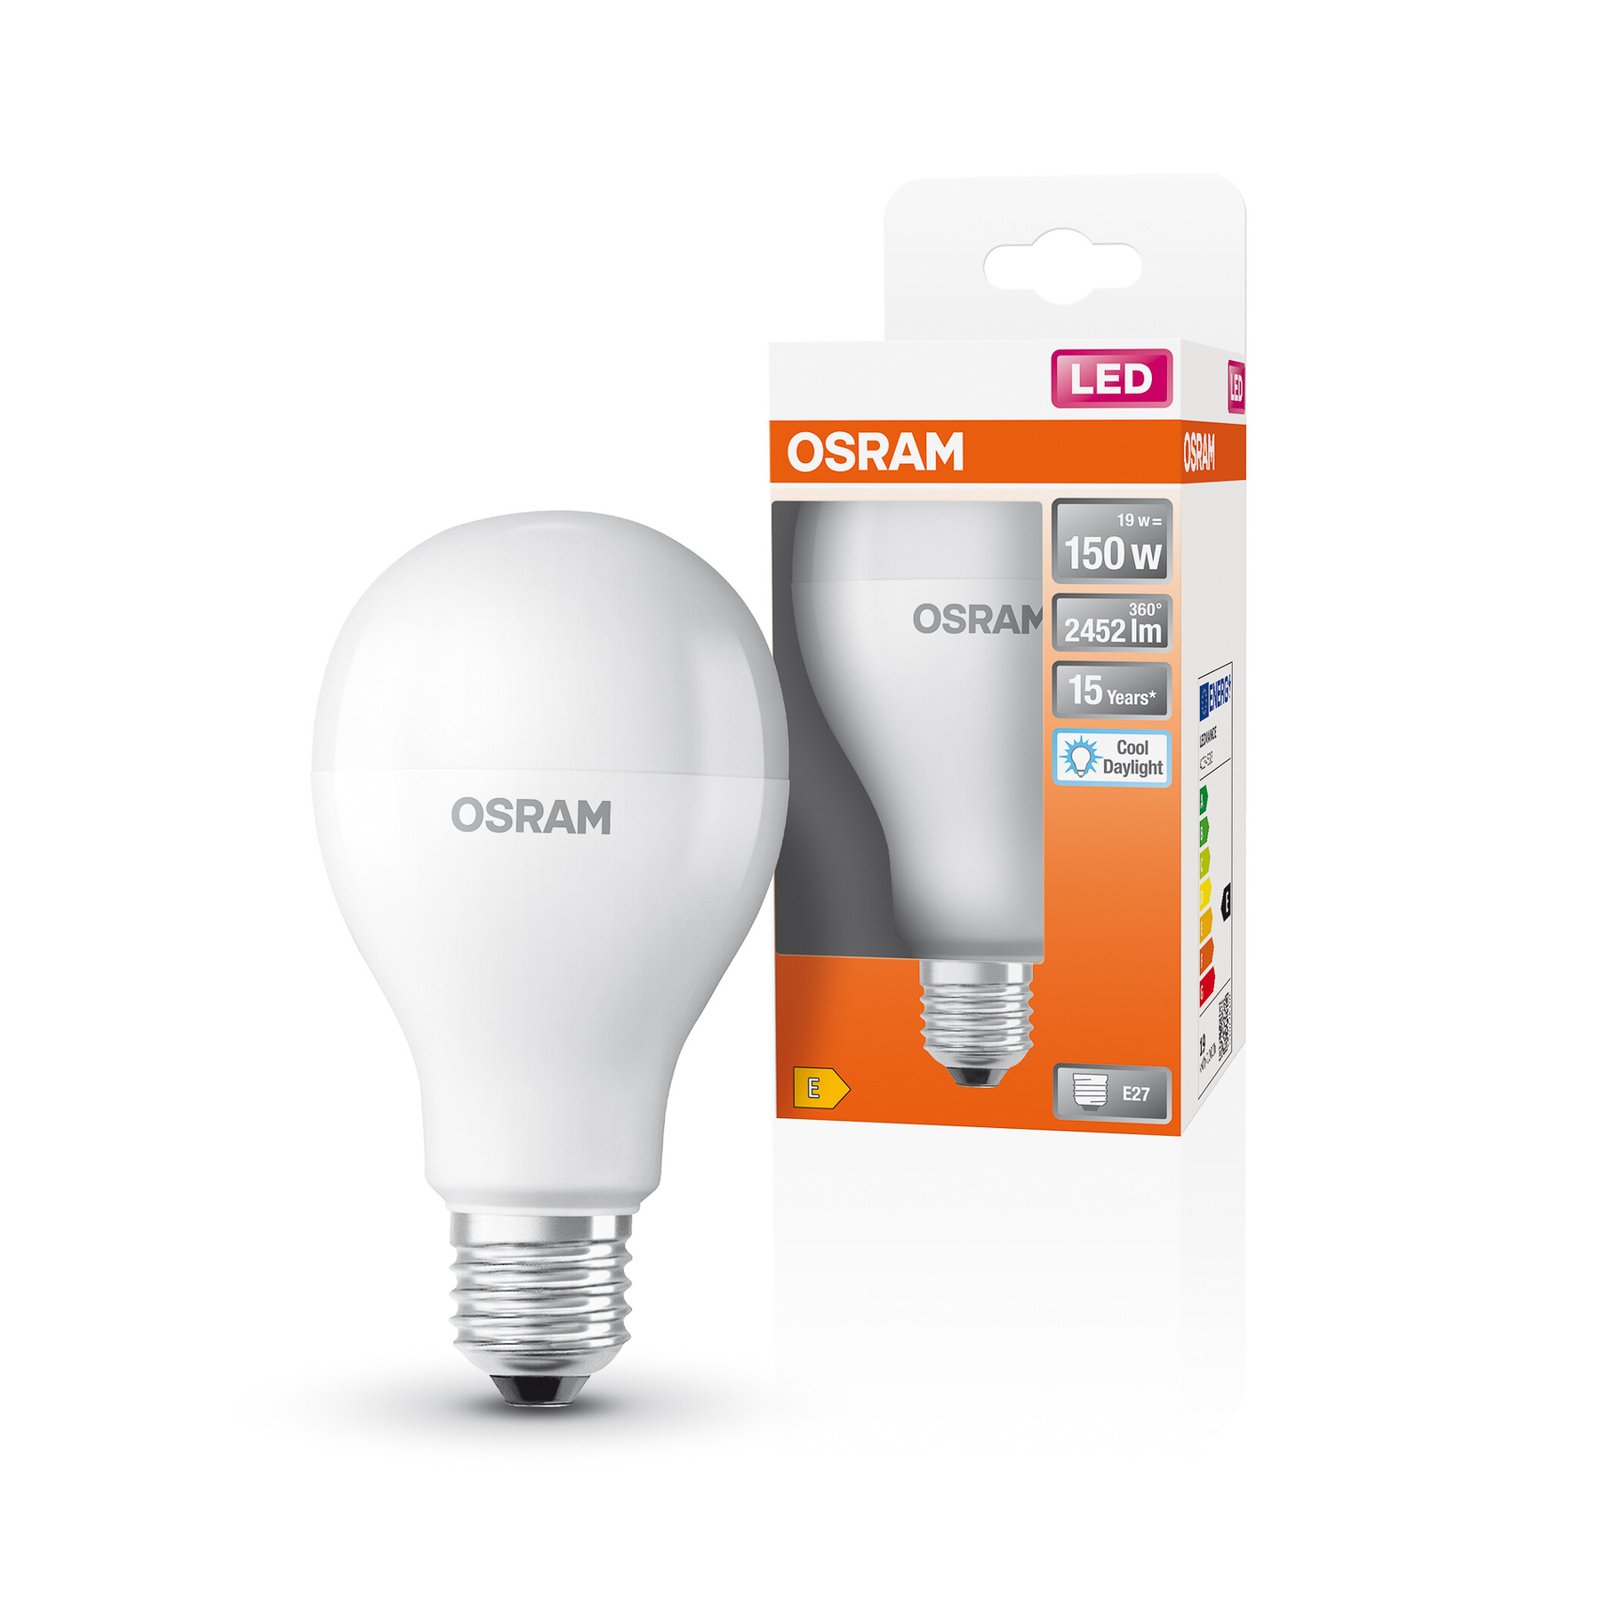 OSRAM Star LED bulb E27 19 W 2,452 lm 6,500 K matt